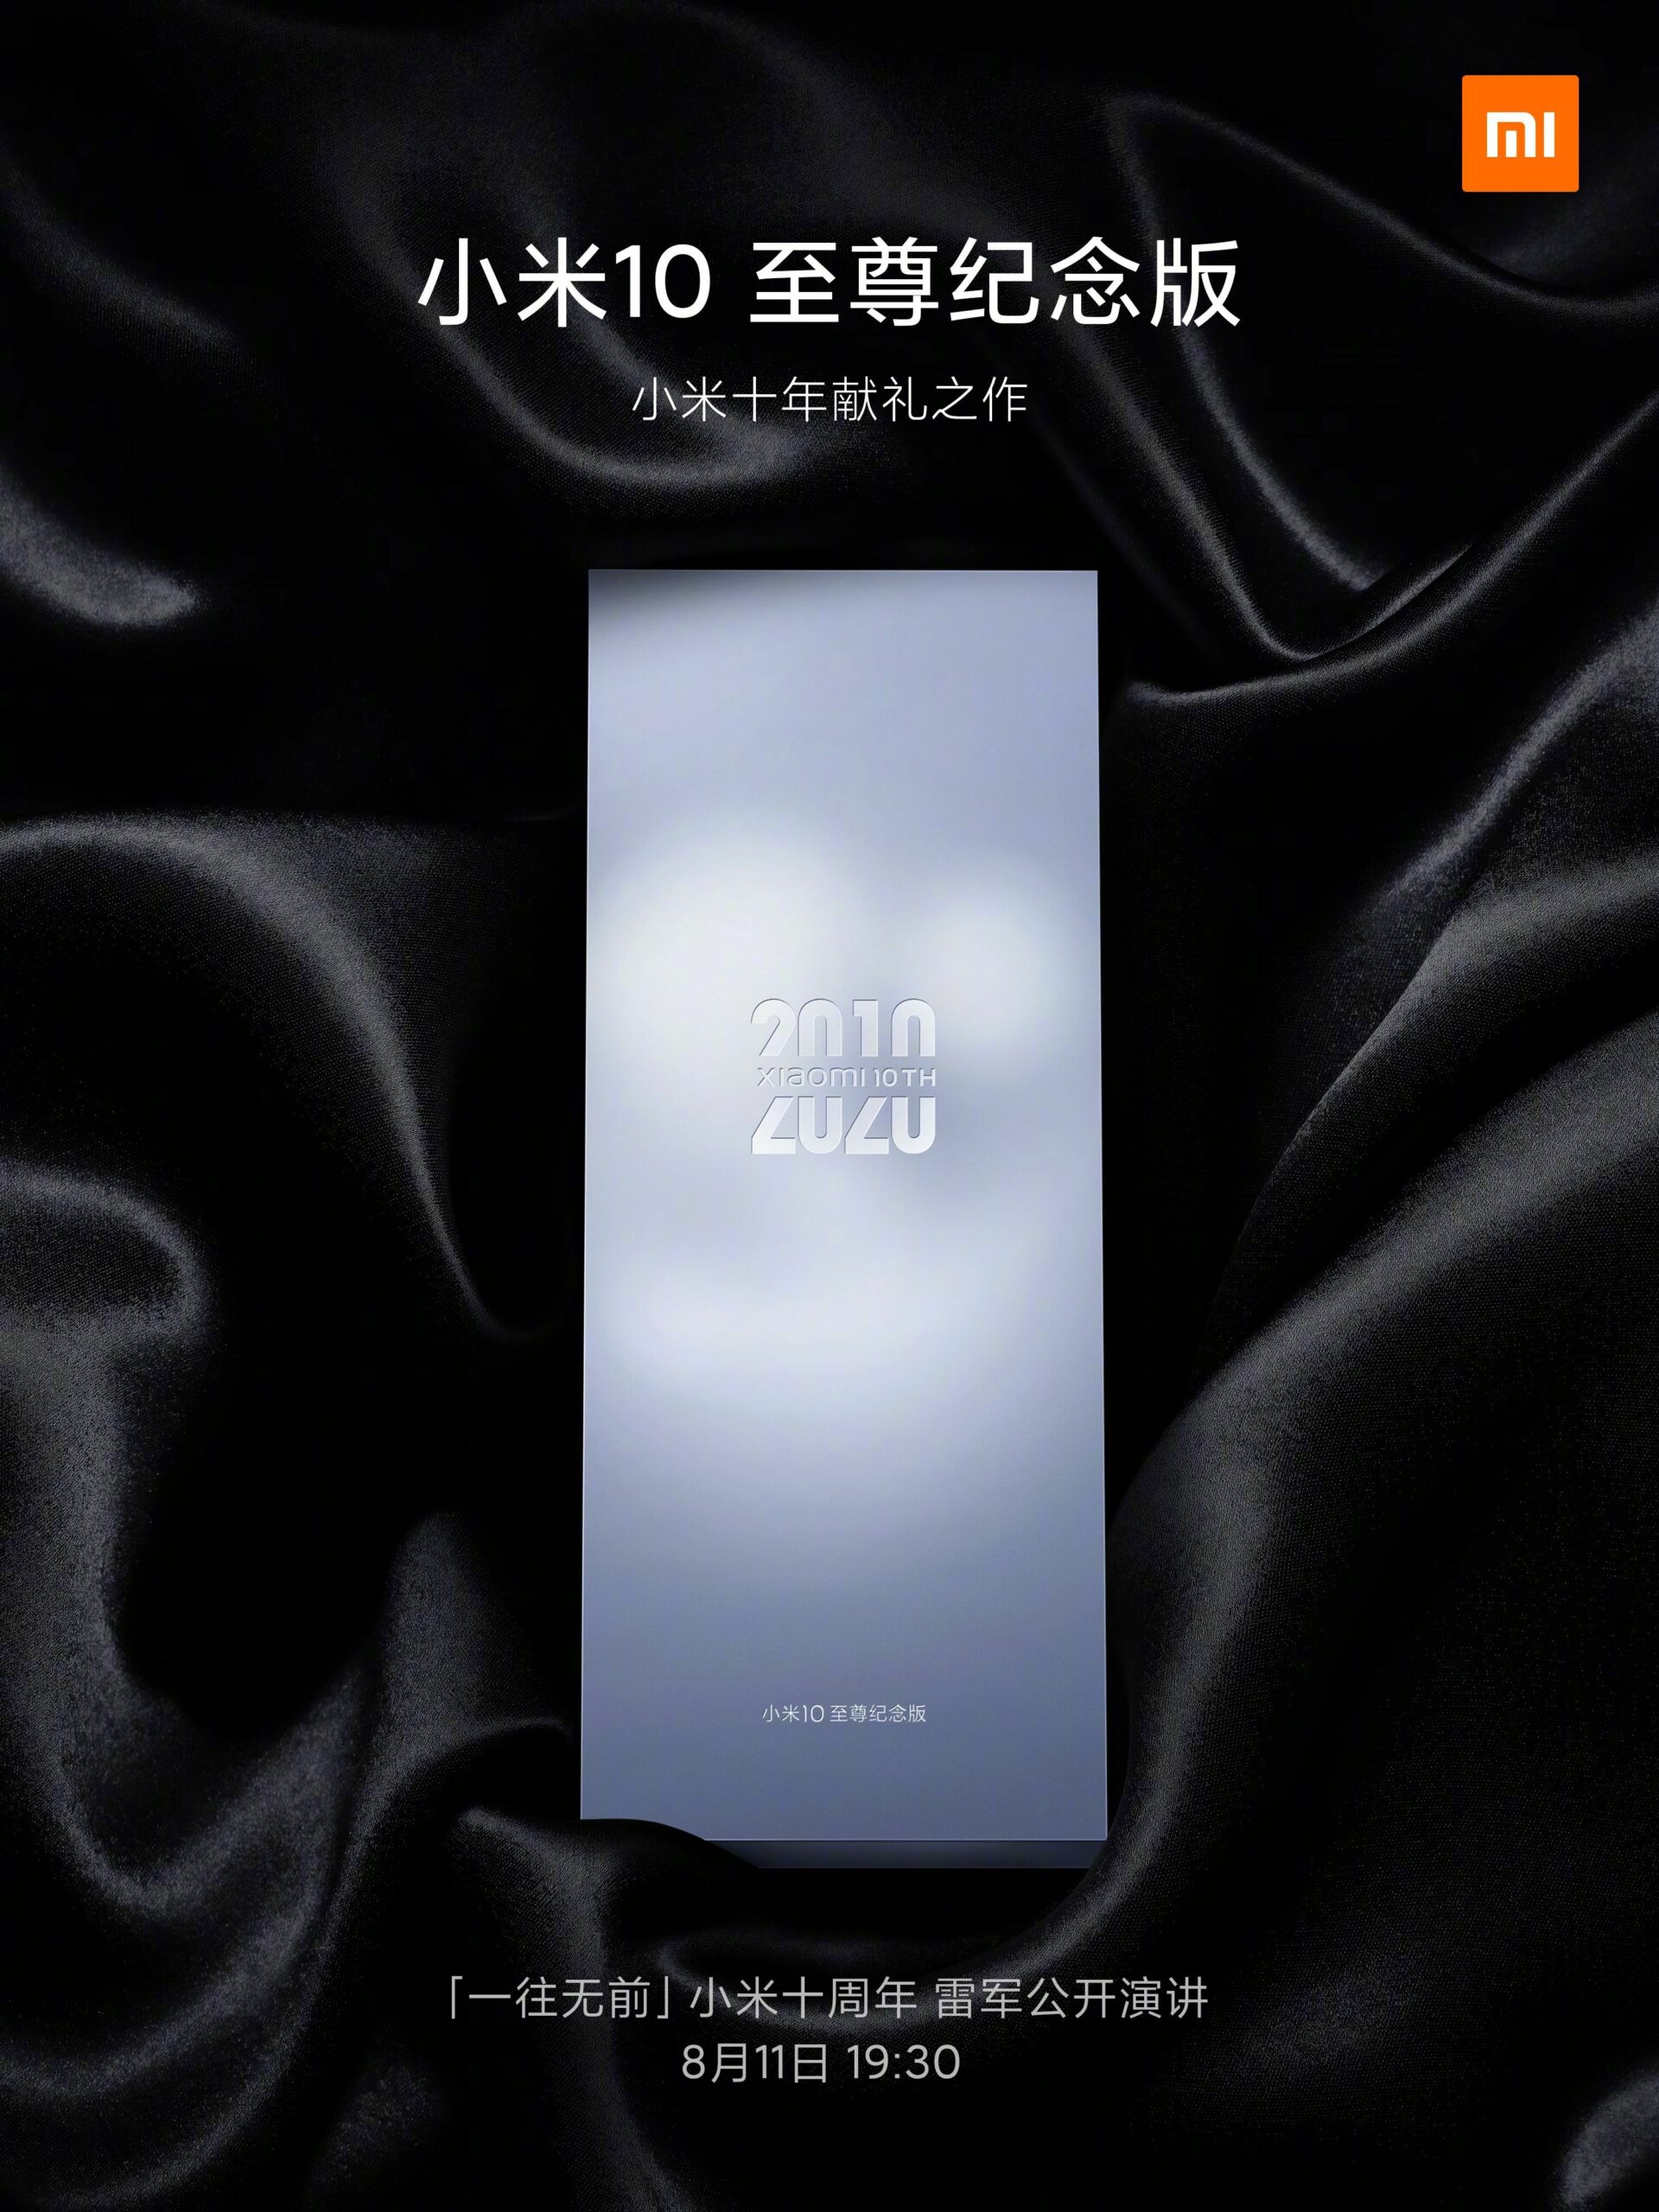 Xiaomi Mi 10 Extreme Piemiņas izdevums 11. augusts